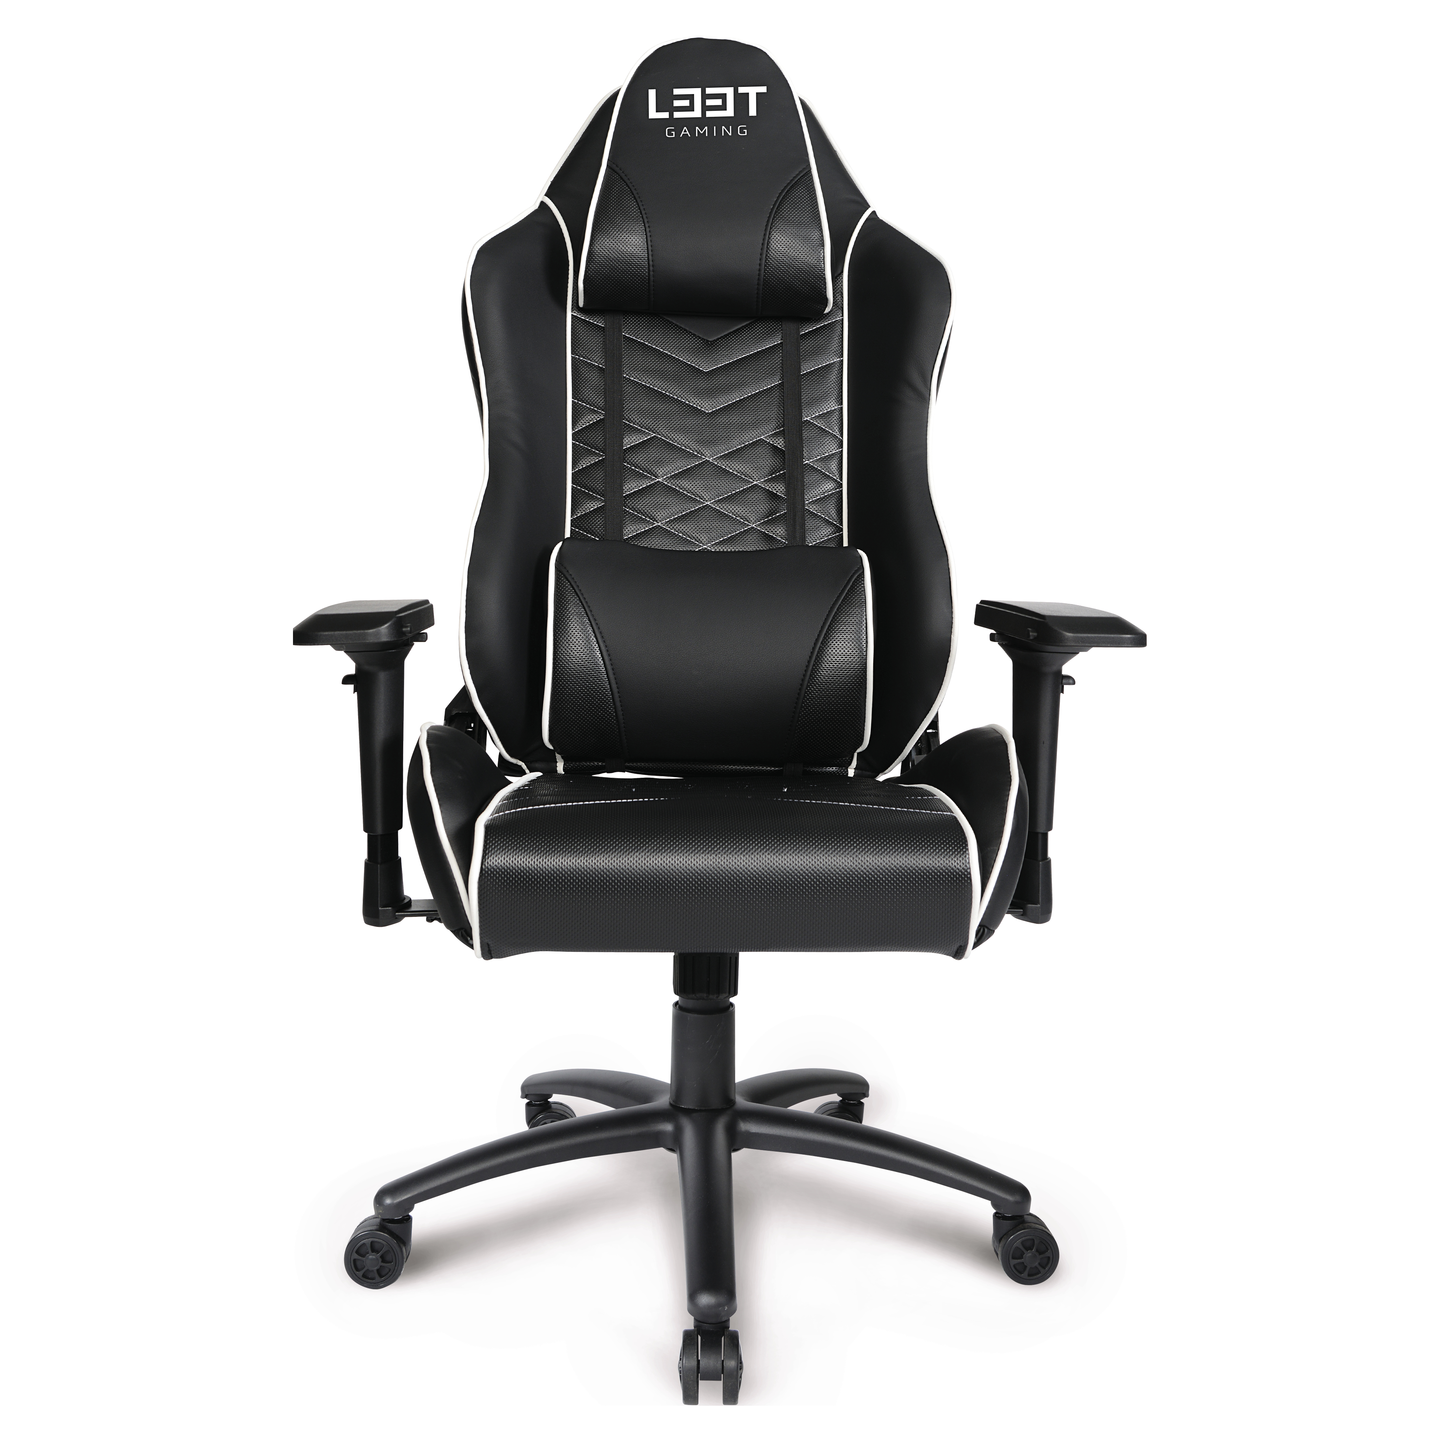 Игровое кресло пнг. L33t Gaming кресло. Геймерское кресло Gamer Red. Кресло ESL игровое. ESL кресло игровое геймерское.